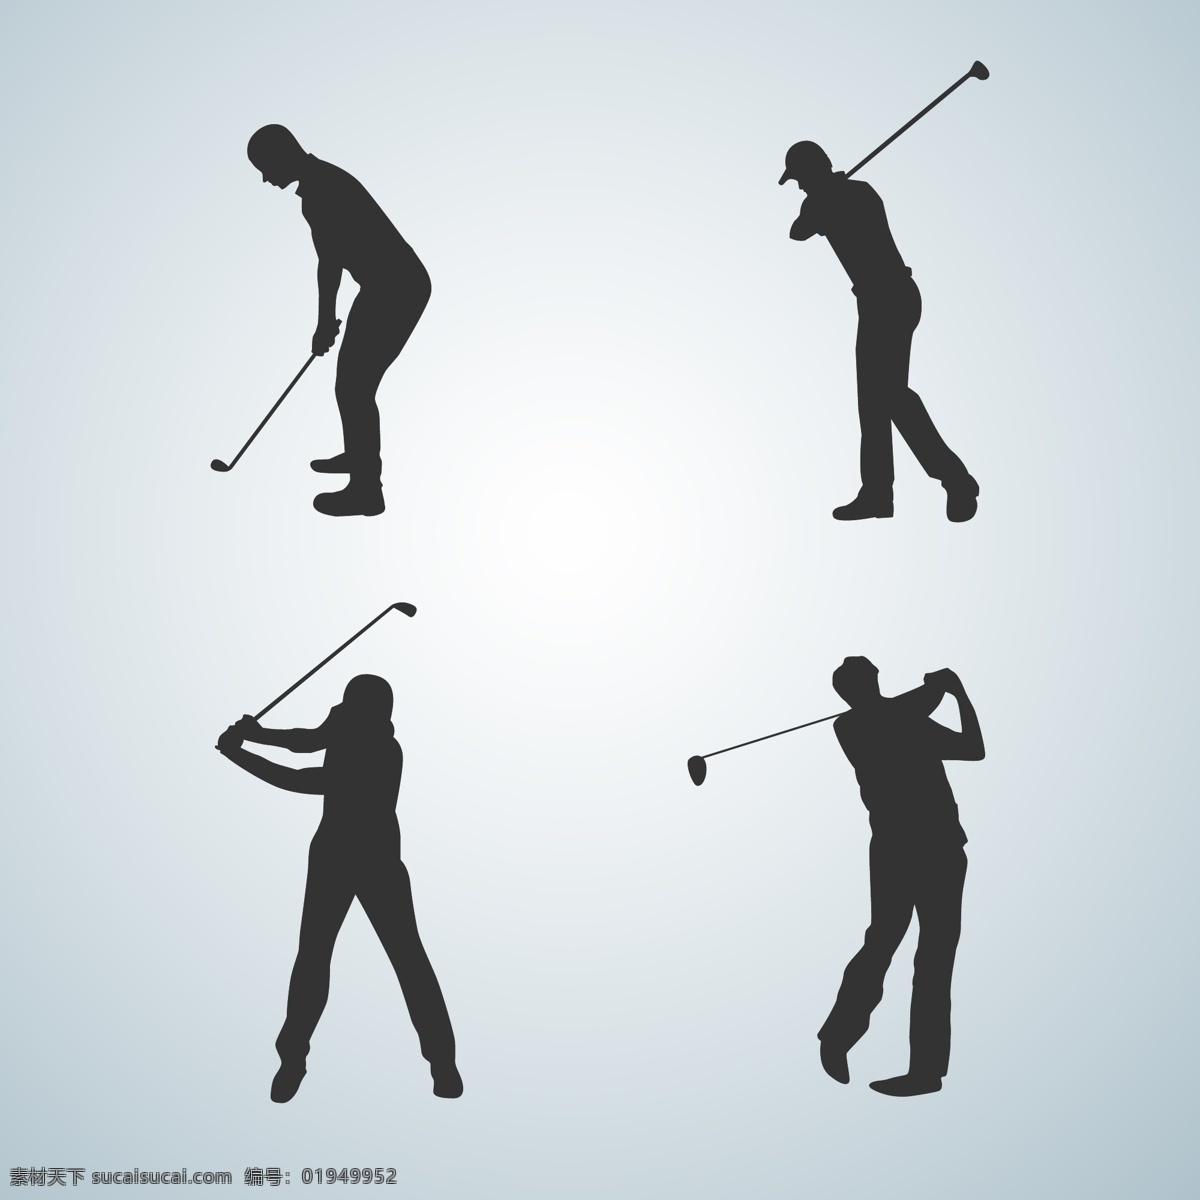 高尔夫球 高尔夫运动 矢量高尔夫 小白球 户外体育运动 高尔夫球杆 高尔夫球场 运动健身 球动 打高尔夫 卡通高尔夫球 卡通设计